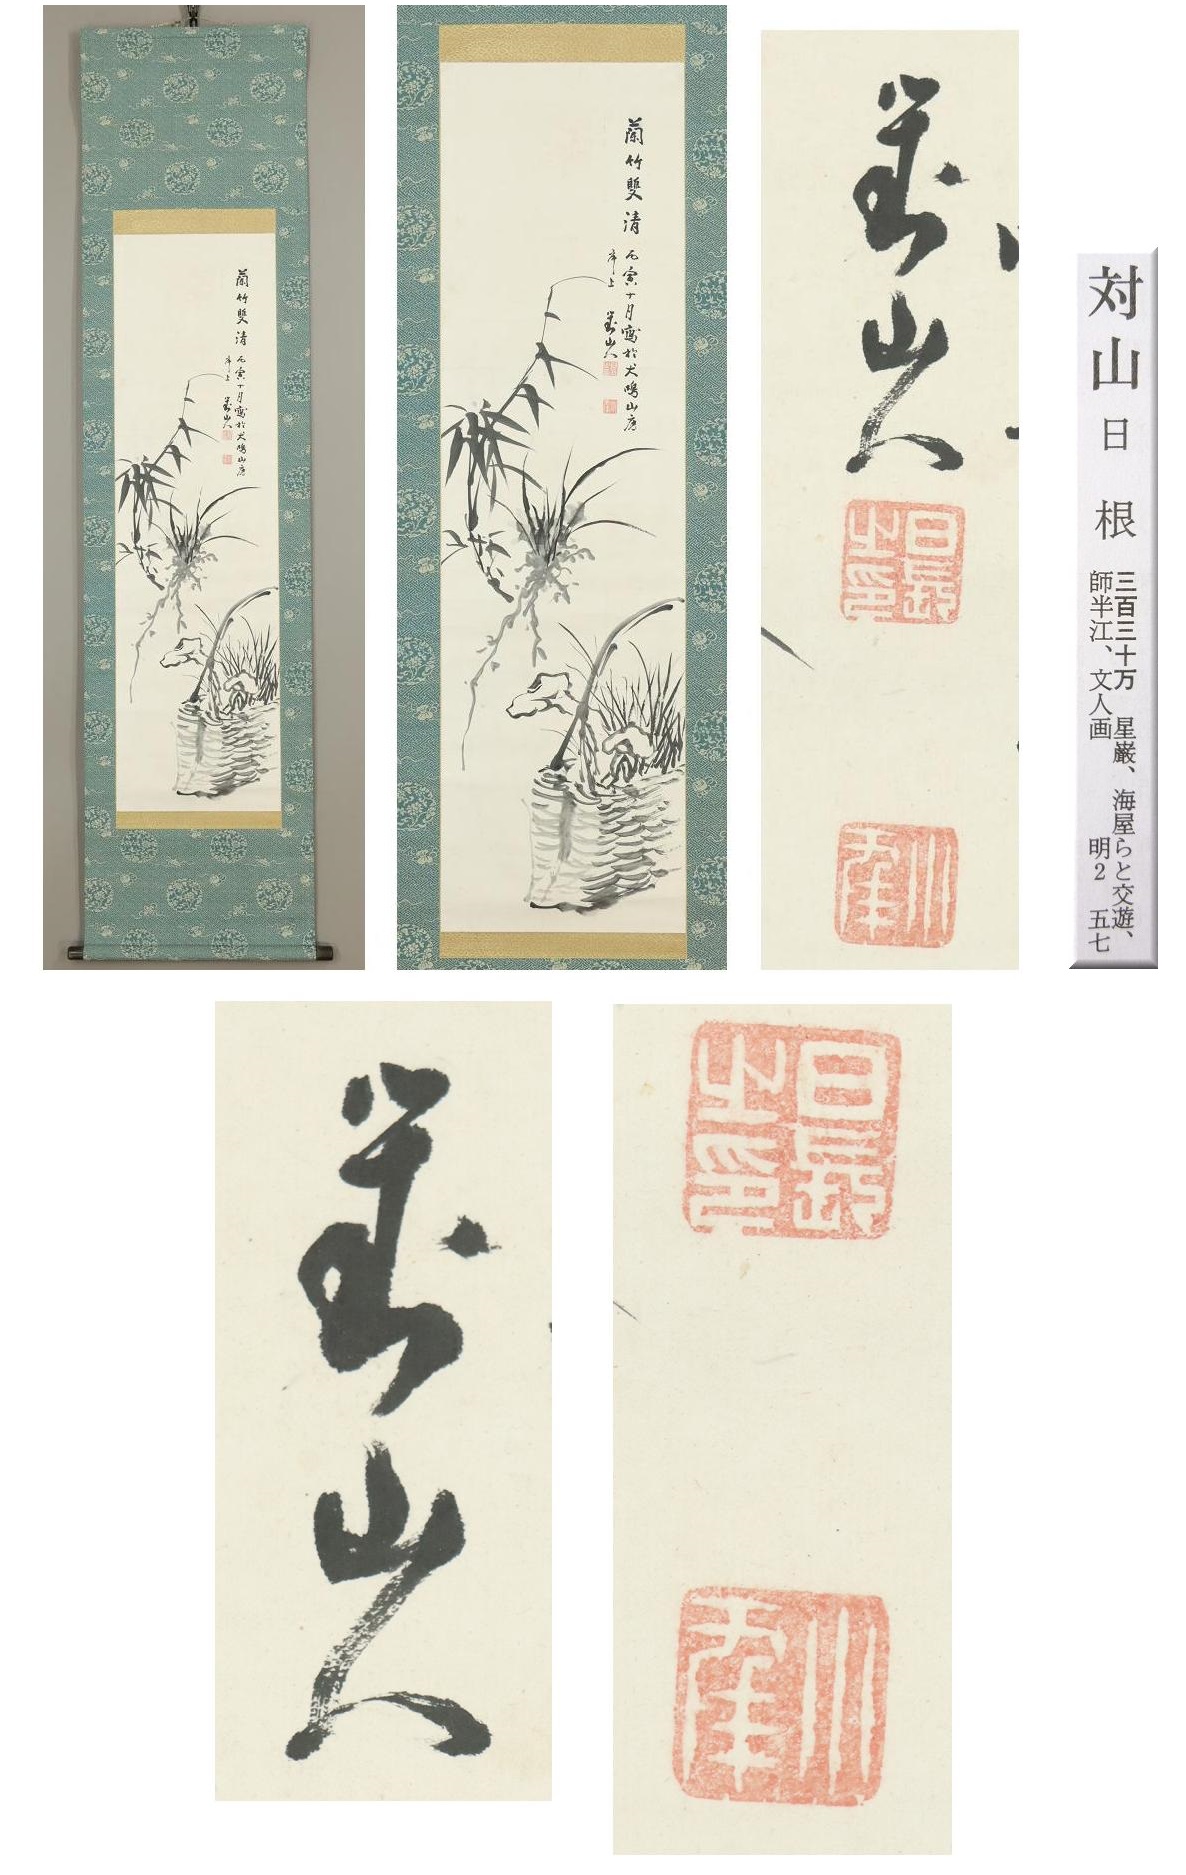 直販直送◆日根対山◆蘭竹双清◆日本画◆肉筆◆紙本◆掛軸◆m393 花鳥、鳥獣